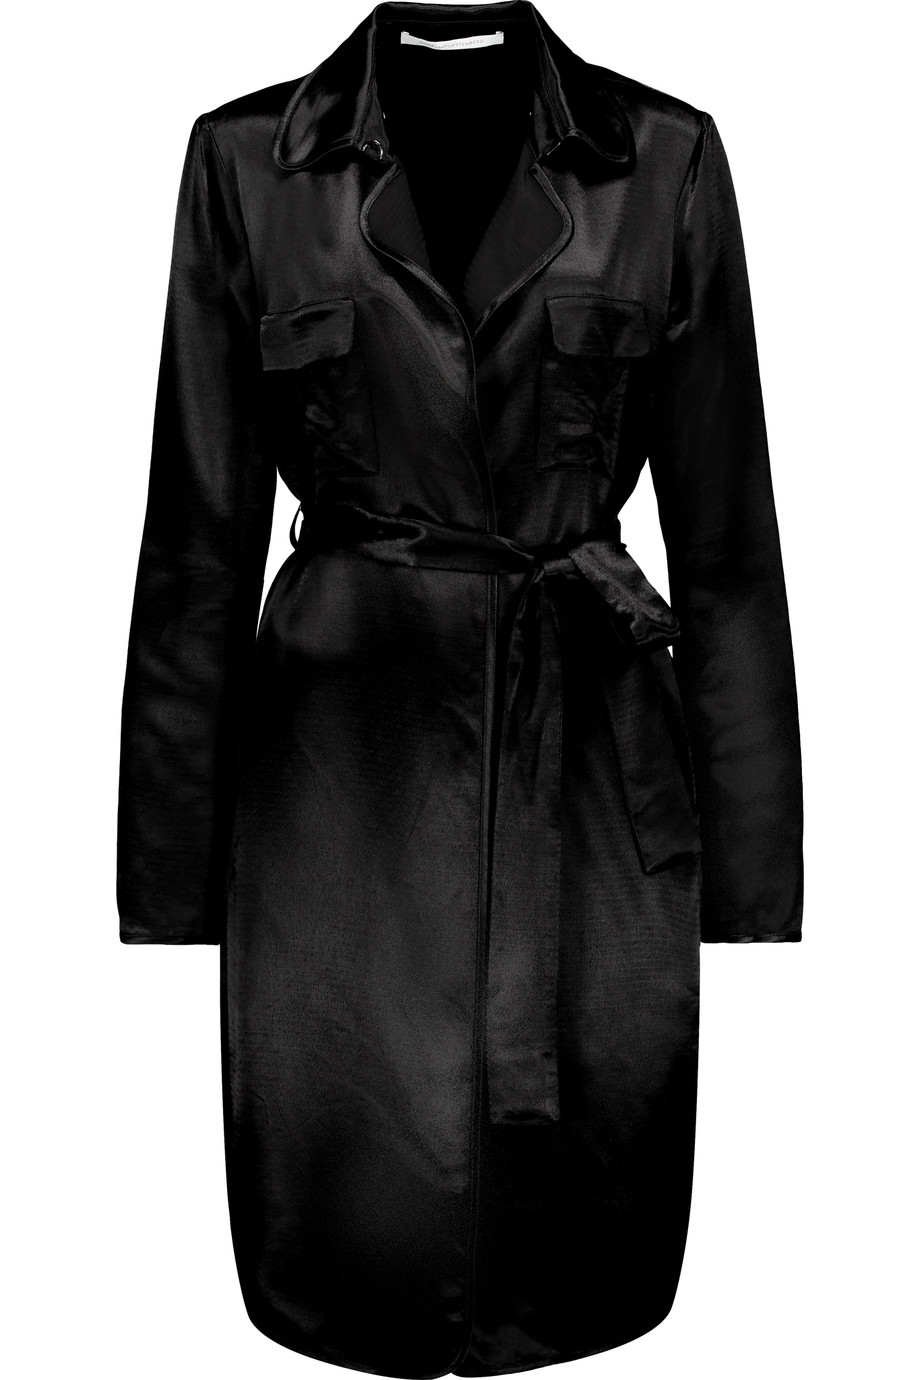 Diane Von Furstenberg Blaine Belted Satin Jacket | ModeSens